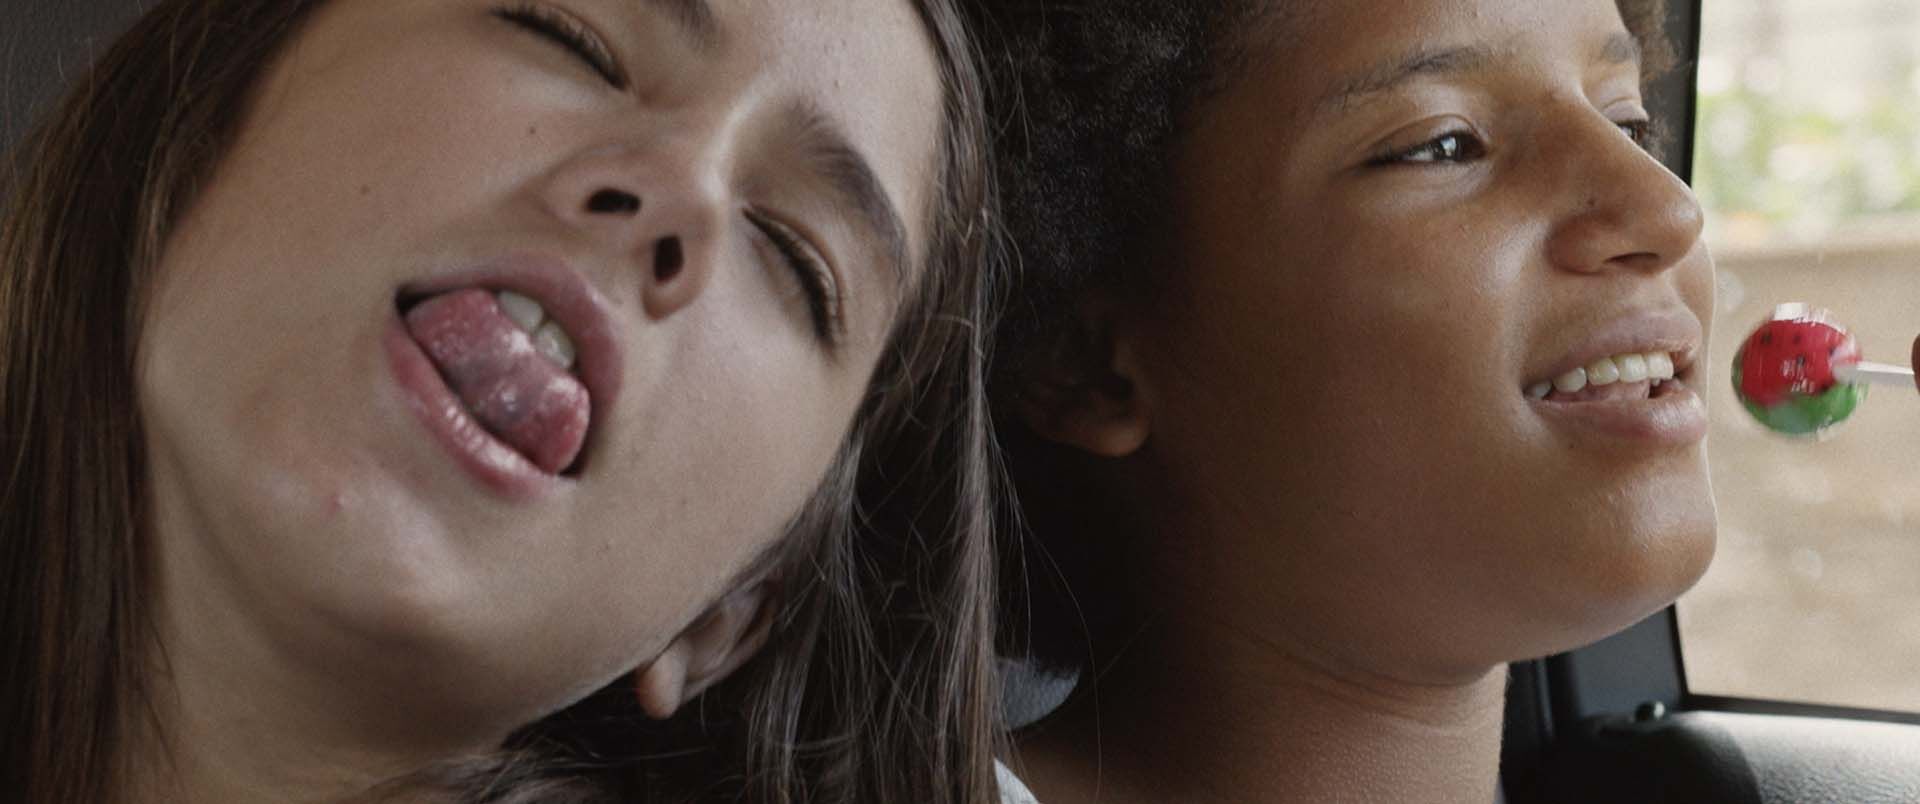 Imagen de la película dominicana Miriam Miente dirigida por Oriol Estrada y Natalia Cabral